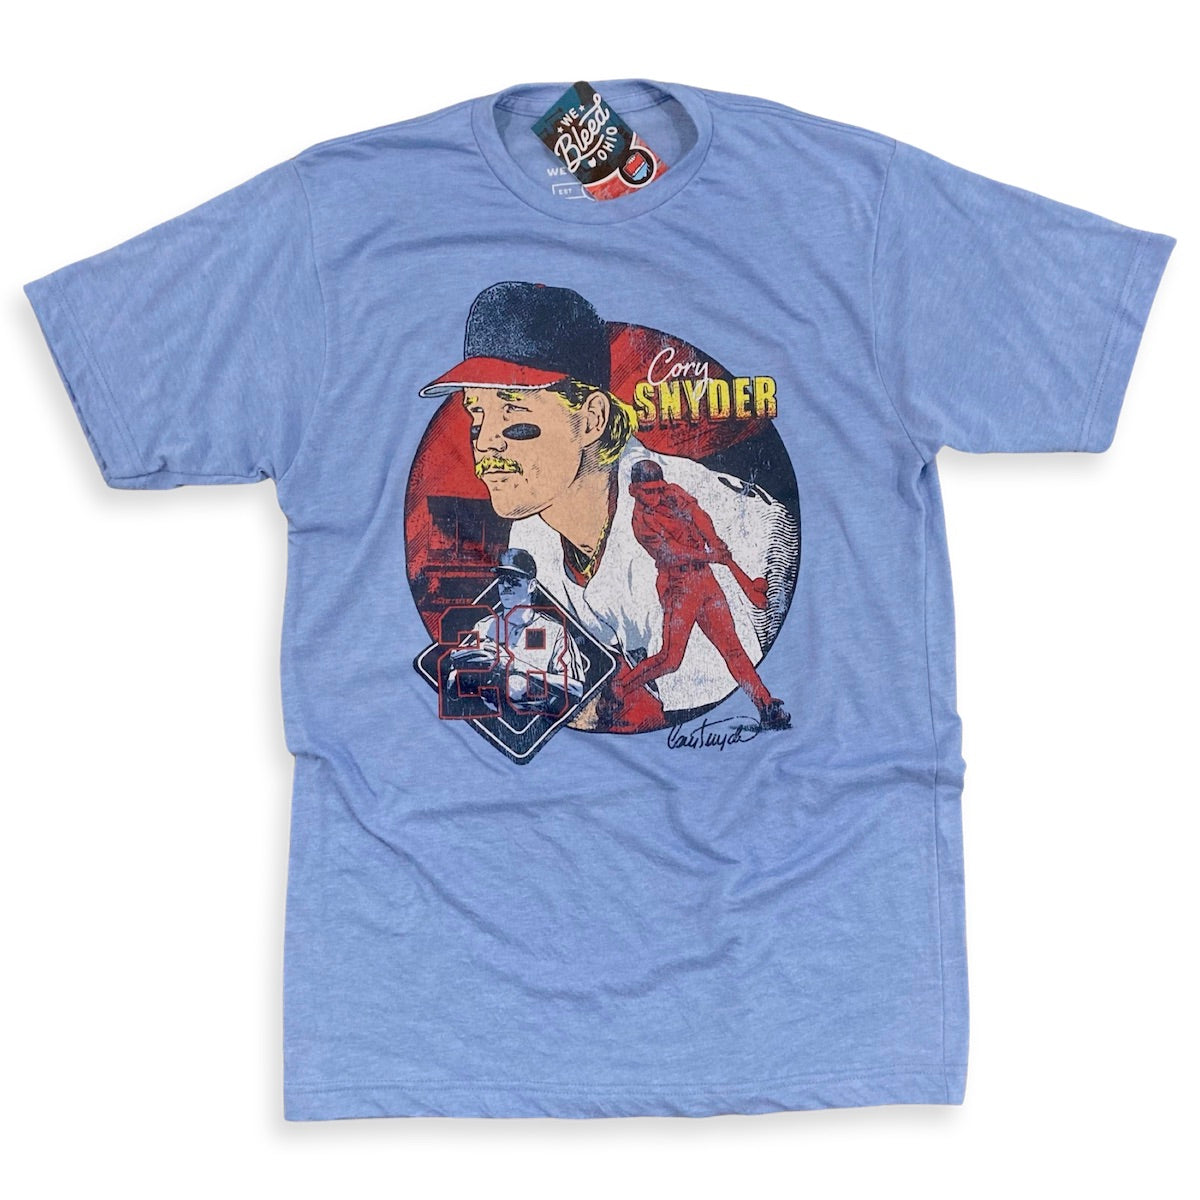 Cory Snyder - Baseball T-shirt, T-shirts, WeBleedOhio, WeBleedOhio